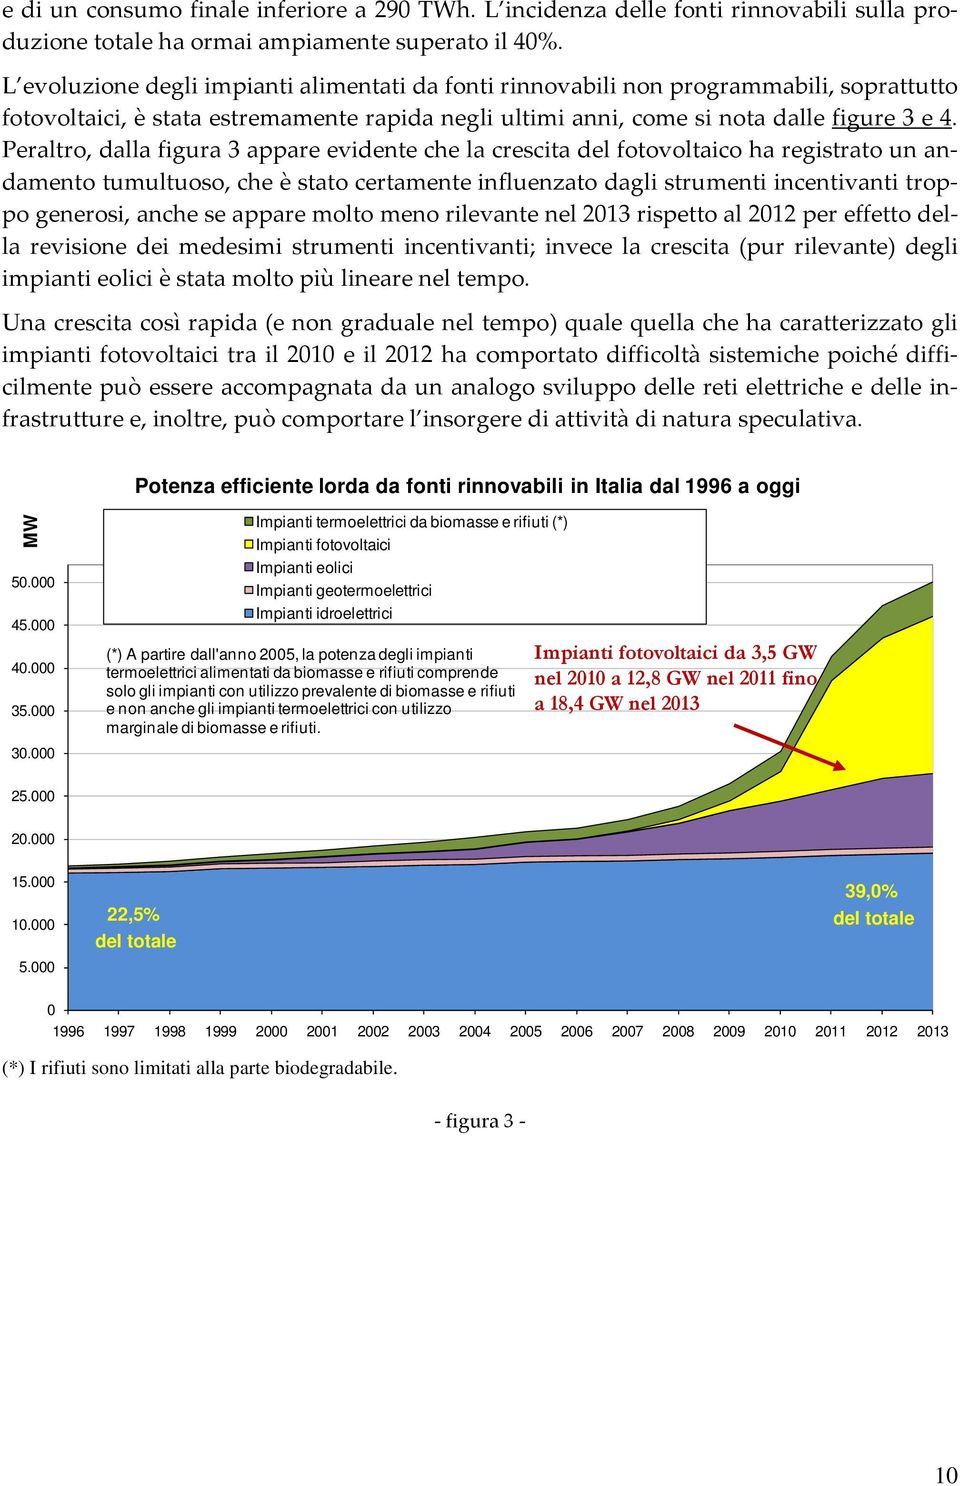 Peraltro, dalla figura 3 appare evidente che la crescita del fotovoltaico ha registrato un andamento tumultuoso, che è stato certamente influenzato dagli strumenti incentivanti troppo generosi, anche